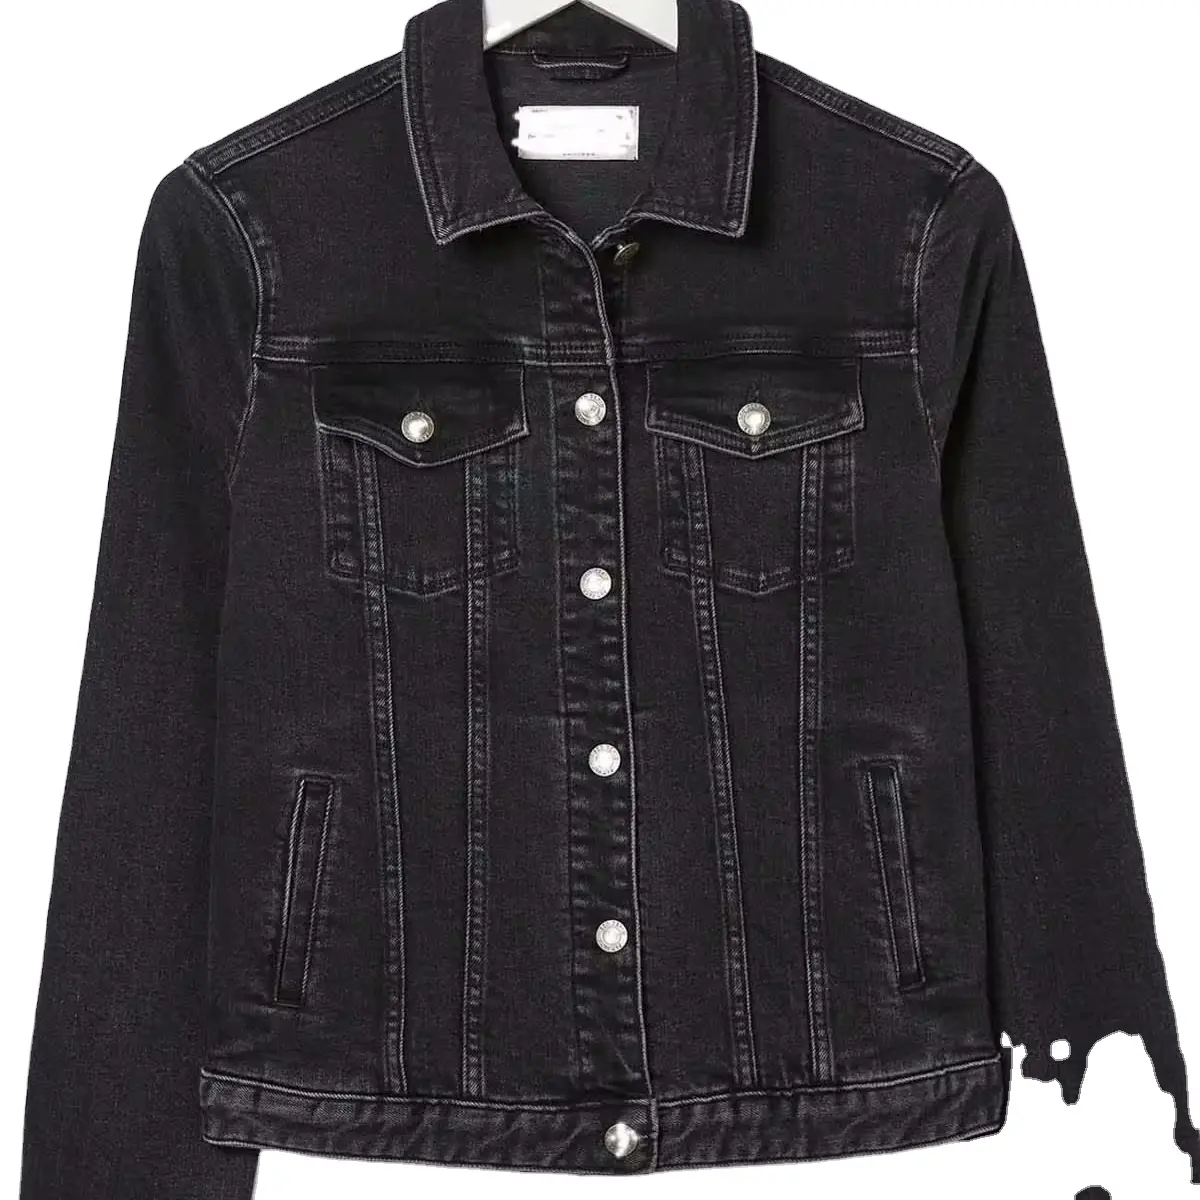 Black Denim Jeans Jacket for Women 100% Cotton Summer Spring Trucker Style Pockets OEM ODM Online Store Designer Jackets